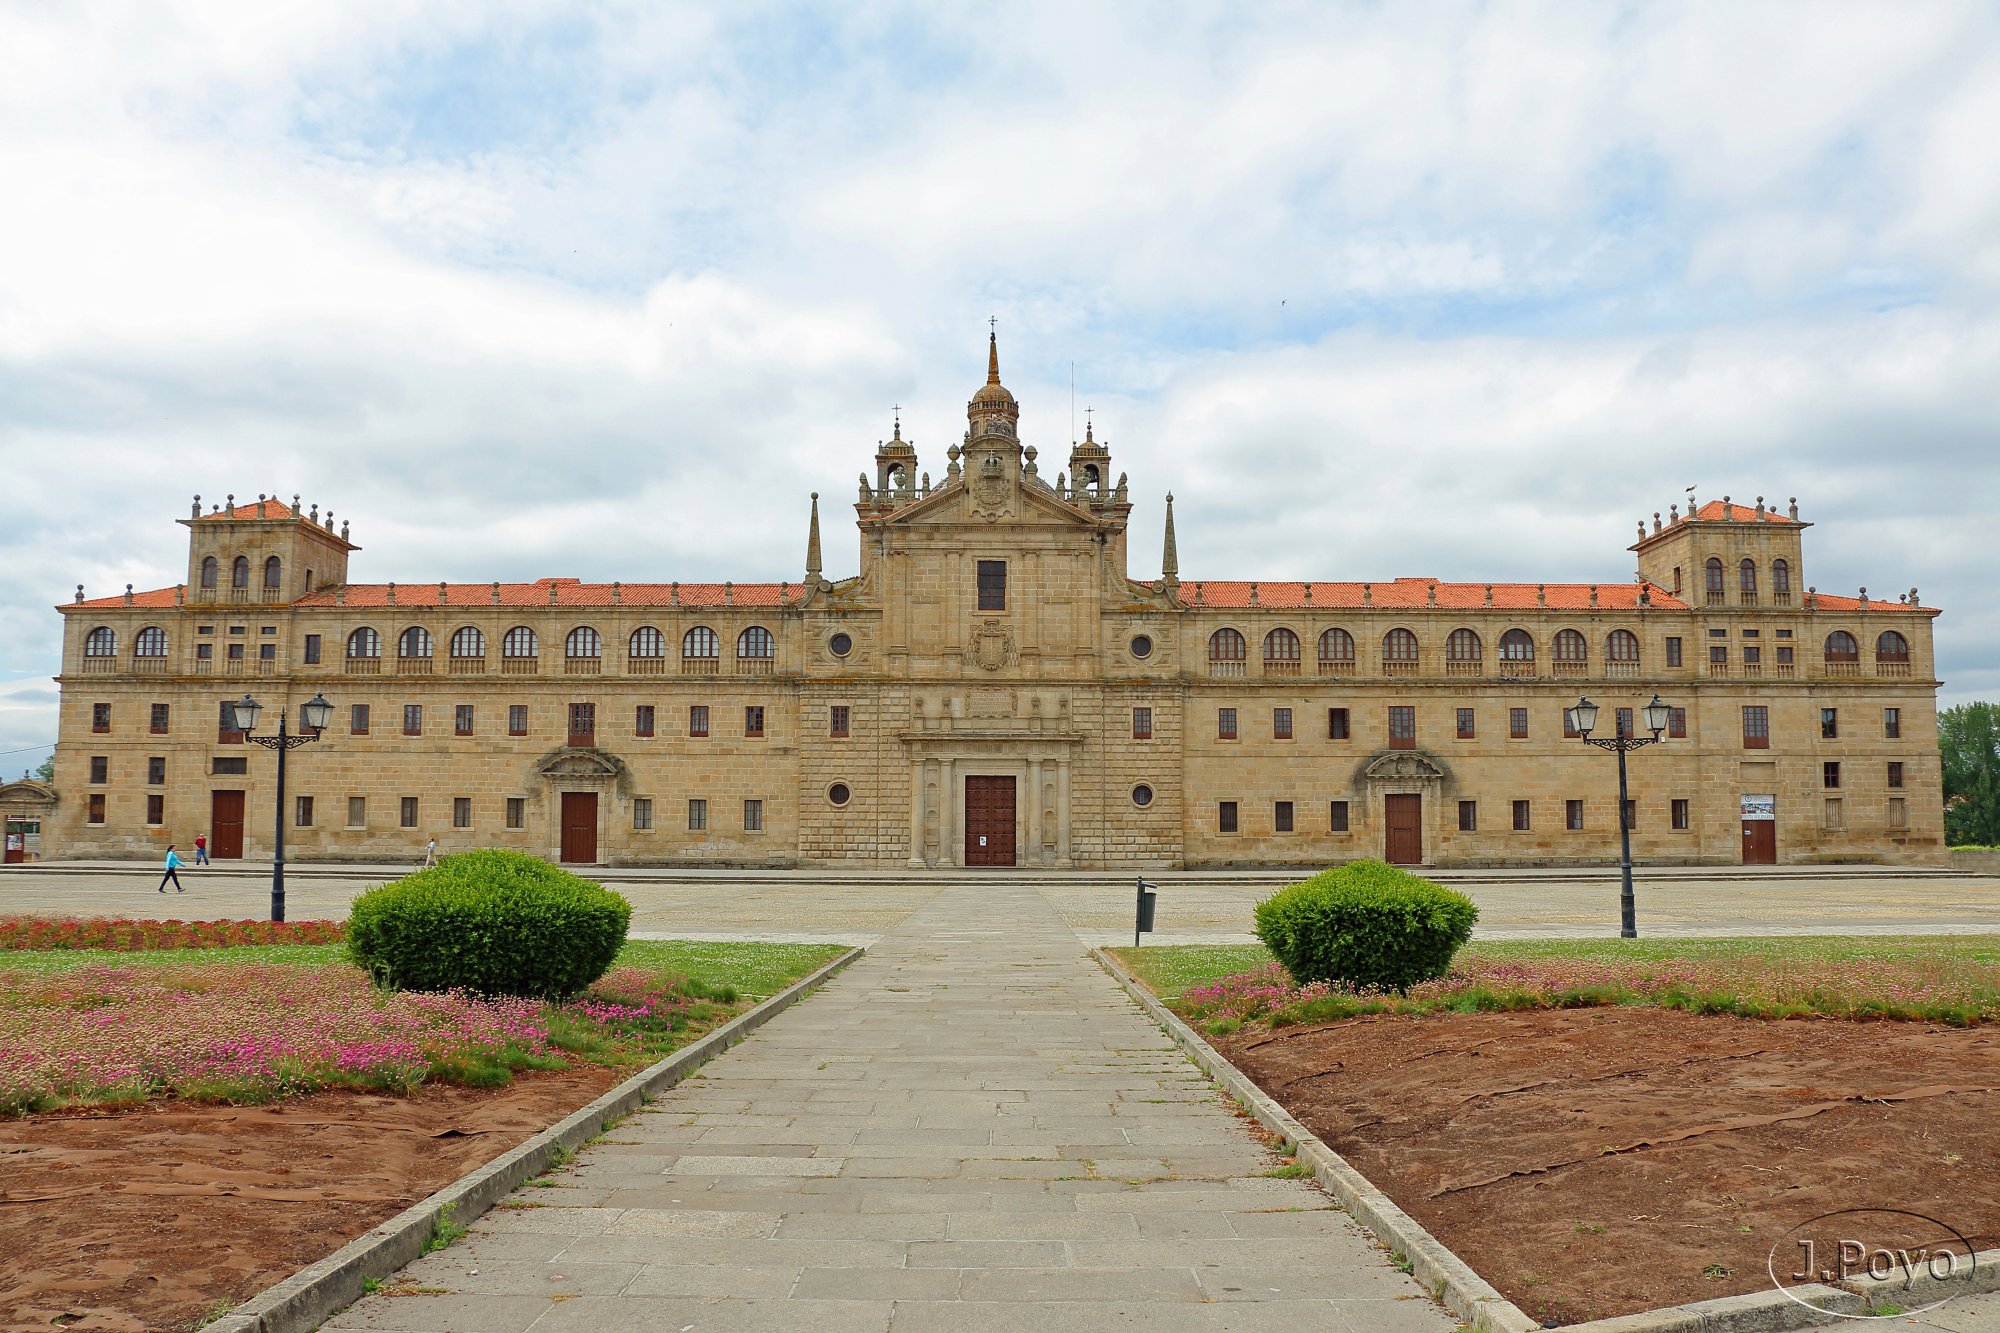 Colegio de Nuestra Señora de la Antigua. Monforte de Lemos